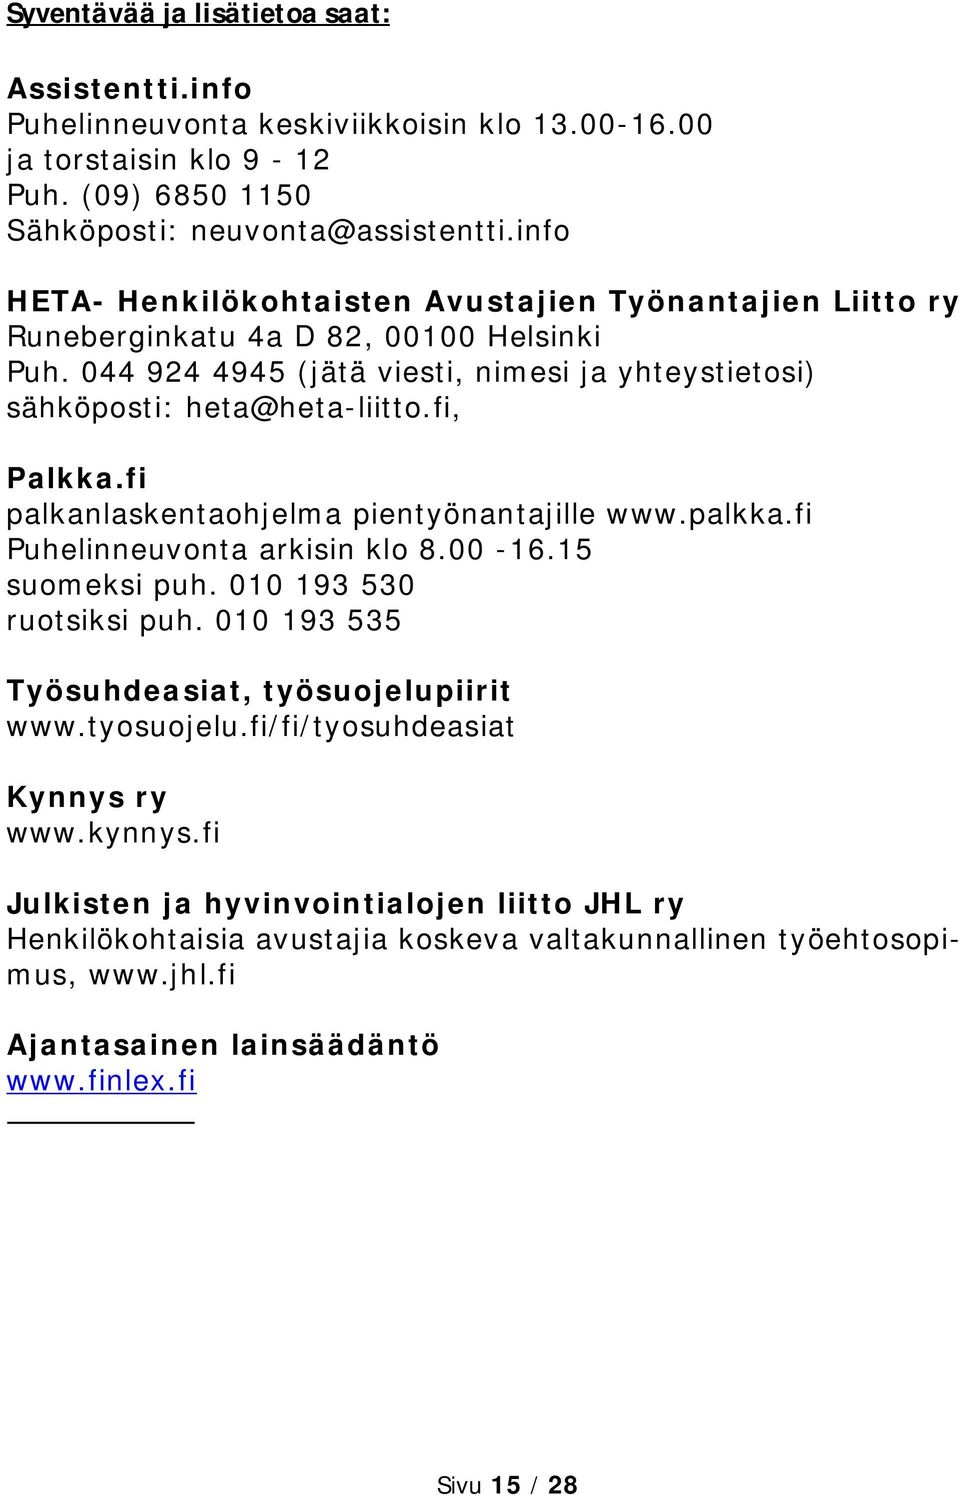 fi, Palkka.fi palkanlaskentaohjelma pientyönantajille www.palkka.fi Puhelinneuvonta arkisin klo 8.00-16.15 suomeksi puh. 010 193 530 ruotsiksi puh. 010 193 535 Työsuhdeasiat, työsuojelupiirit www.